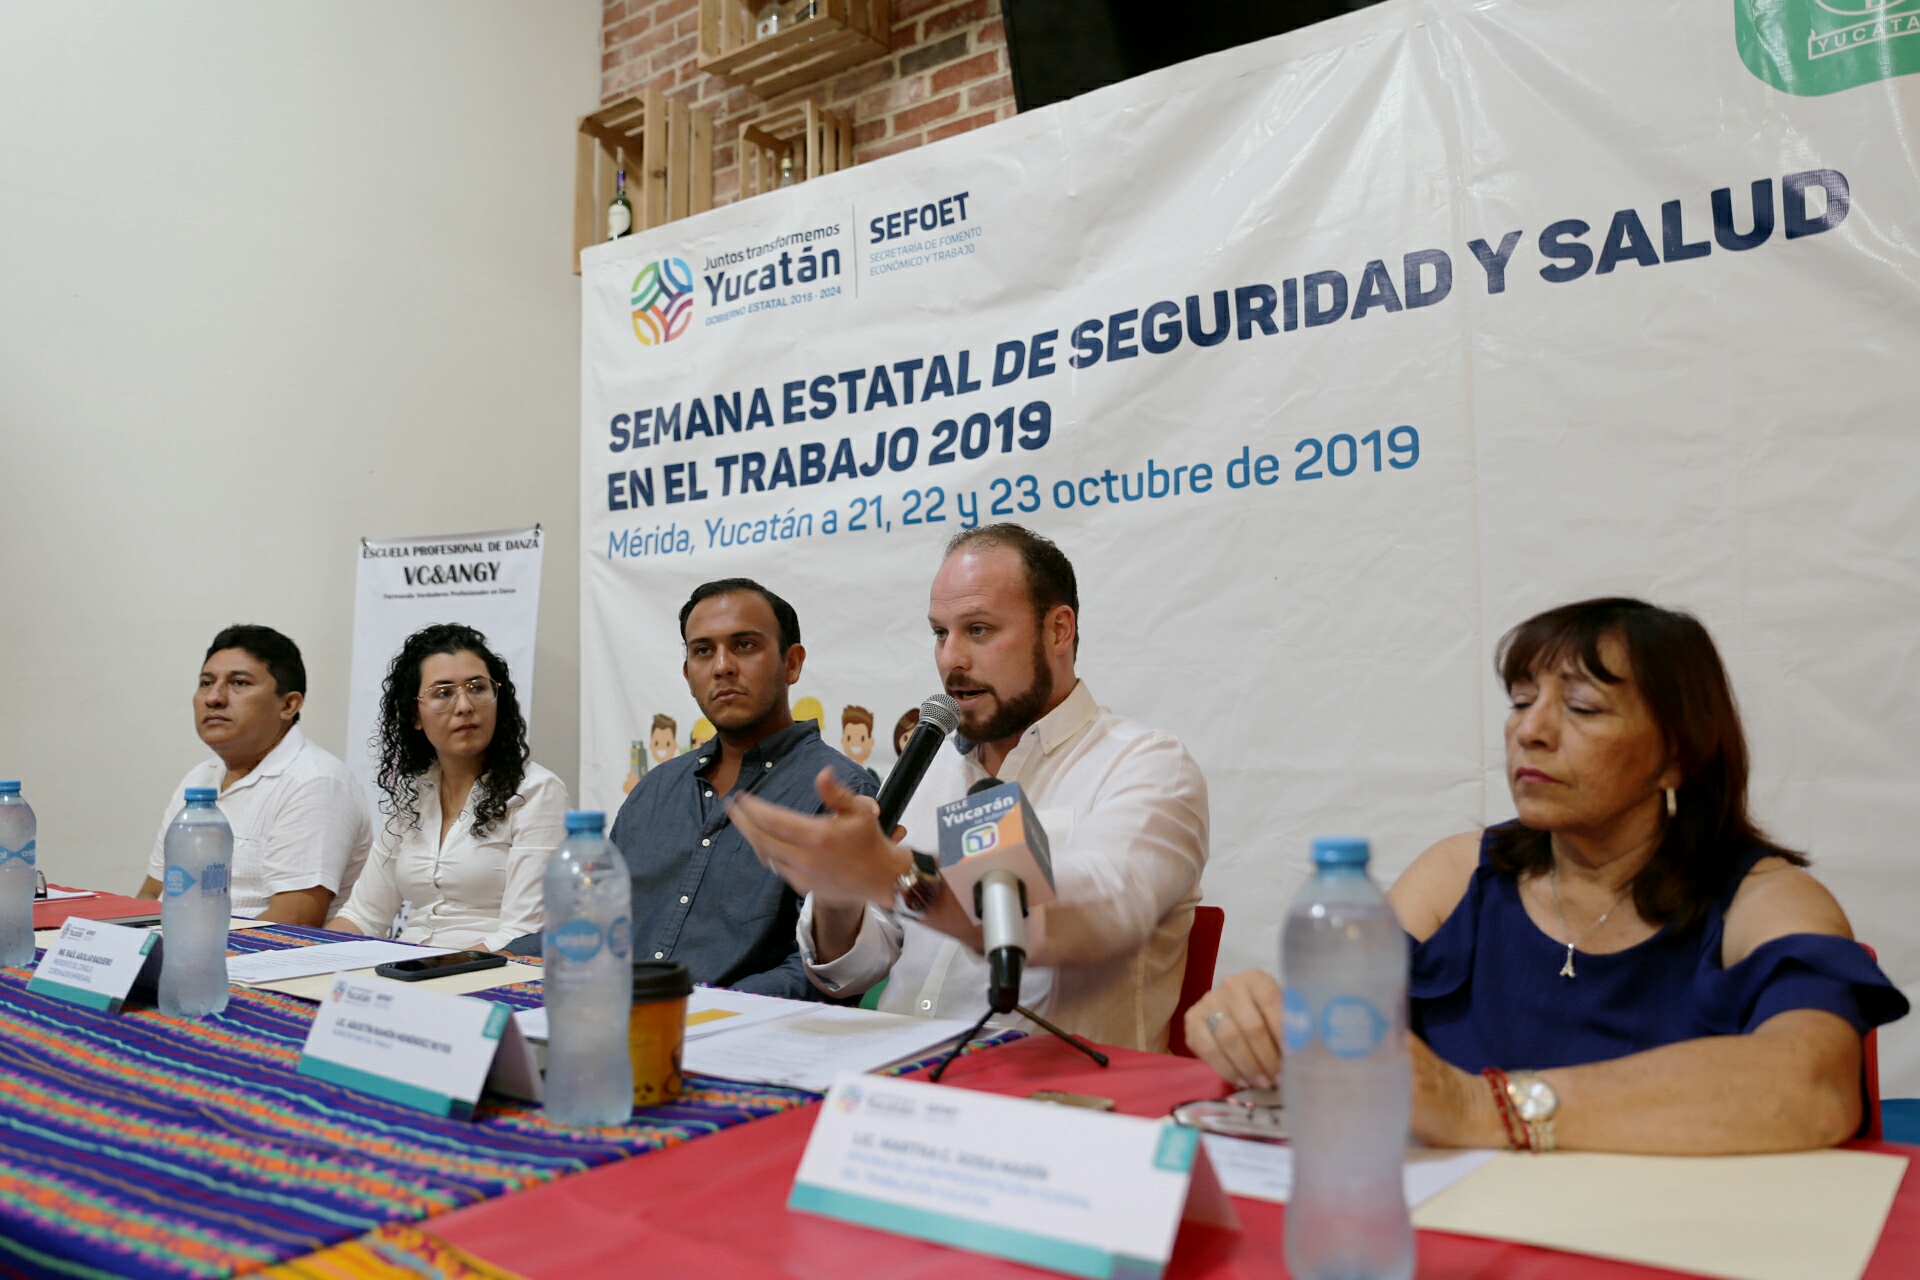 Photo of Sefoet presenta la Semana Estatal de Seguridad y Salud en el Trabajo 2019